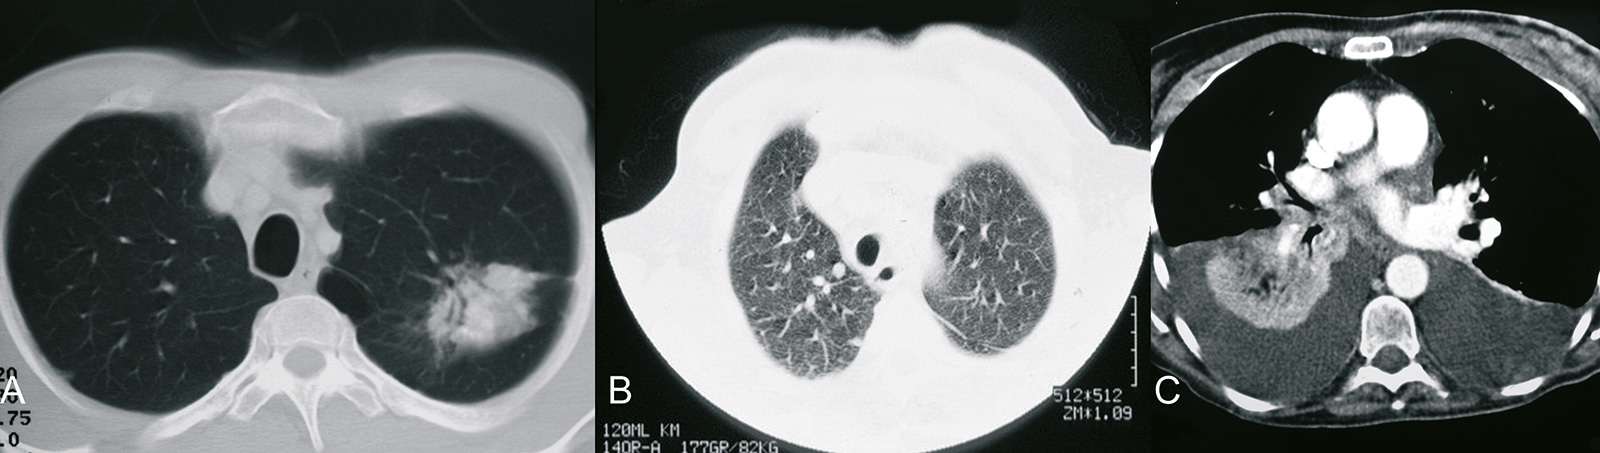 Abb. 8-58: Einzelne Metastase im rechten Unterlappen (A), multiple kleine Lungenmetastasen (B) und ausgedehnte Metastase mit sekundärem Pleuraerguss (C) (Eigentum des Instituts für Klinische Radiologie der Universität Münster)